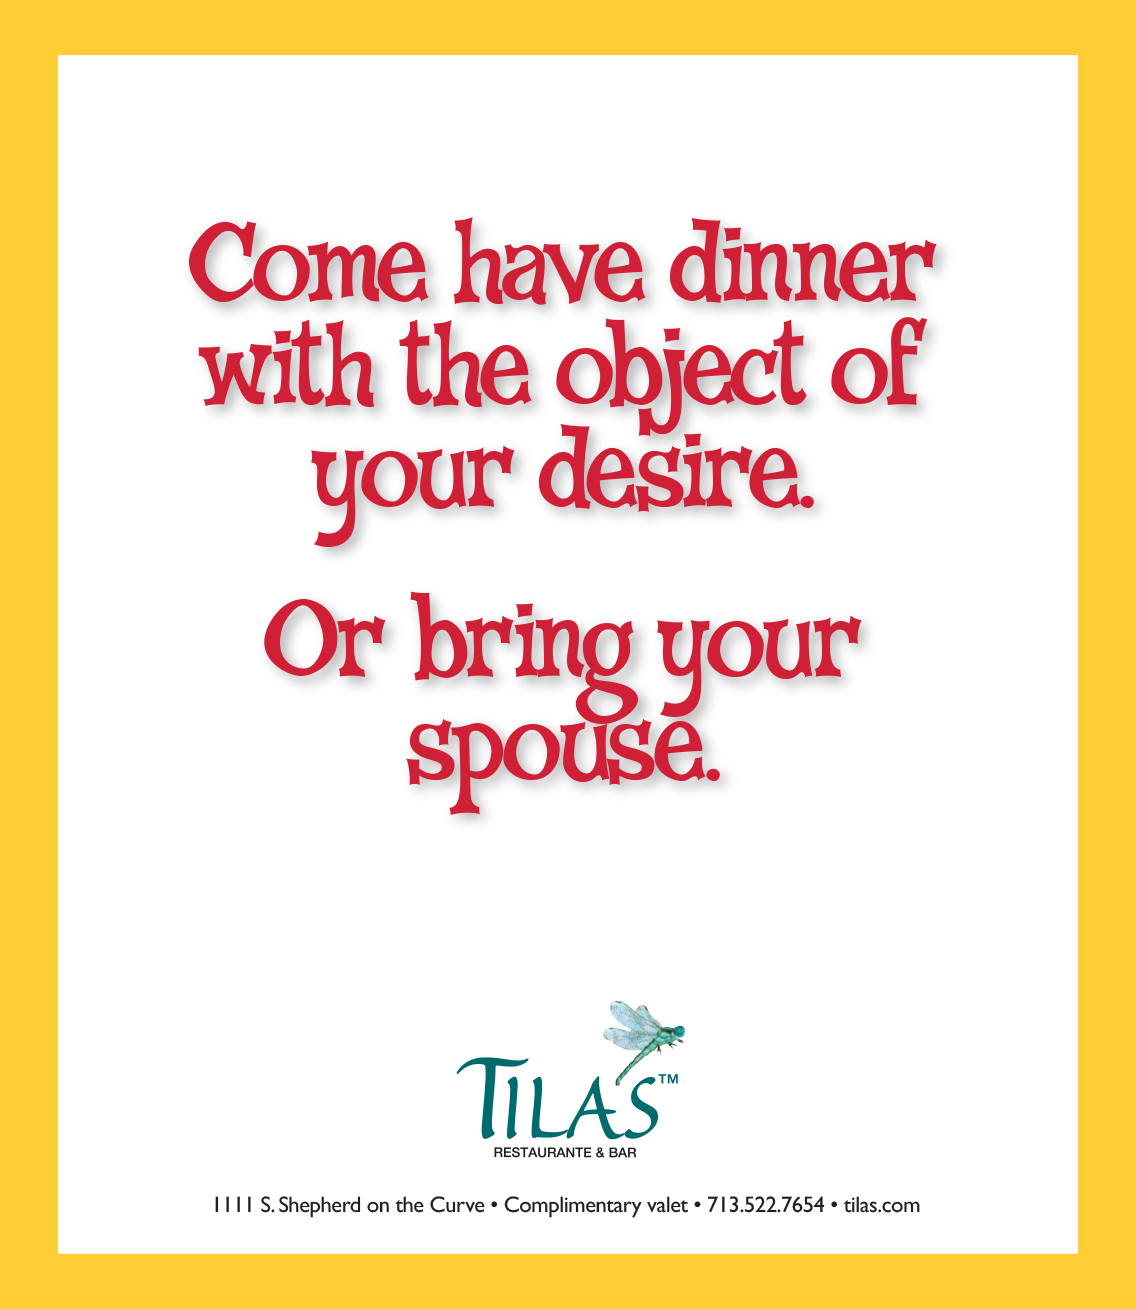 Tila's Restaurante advertising